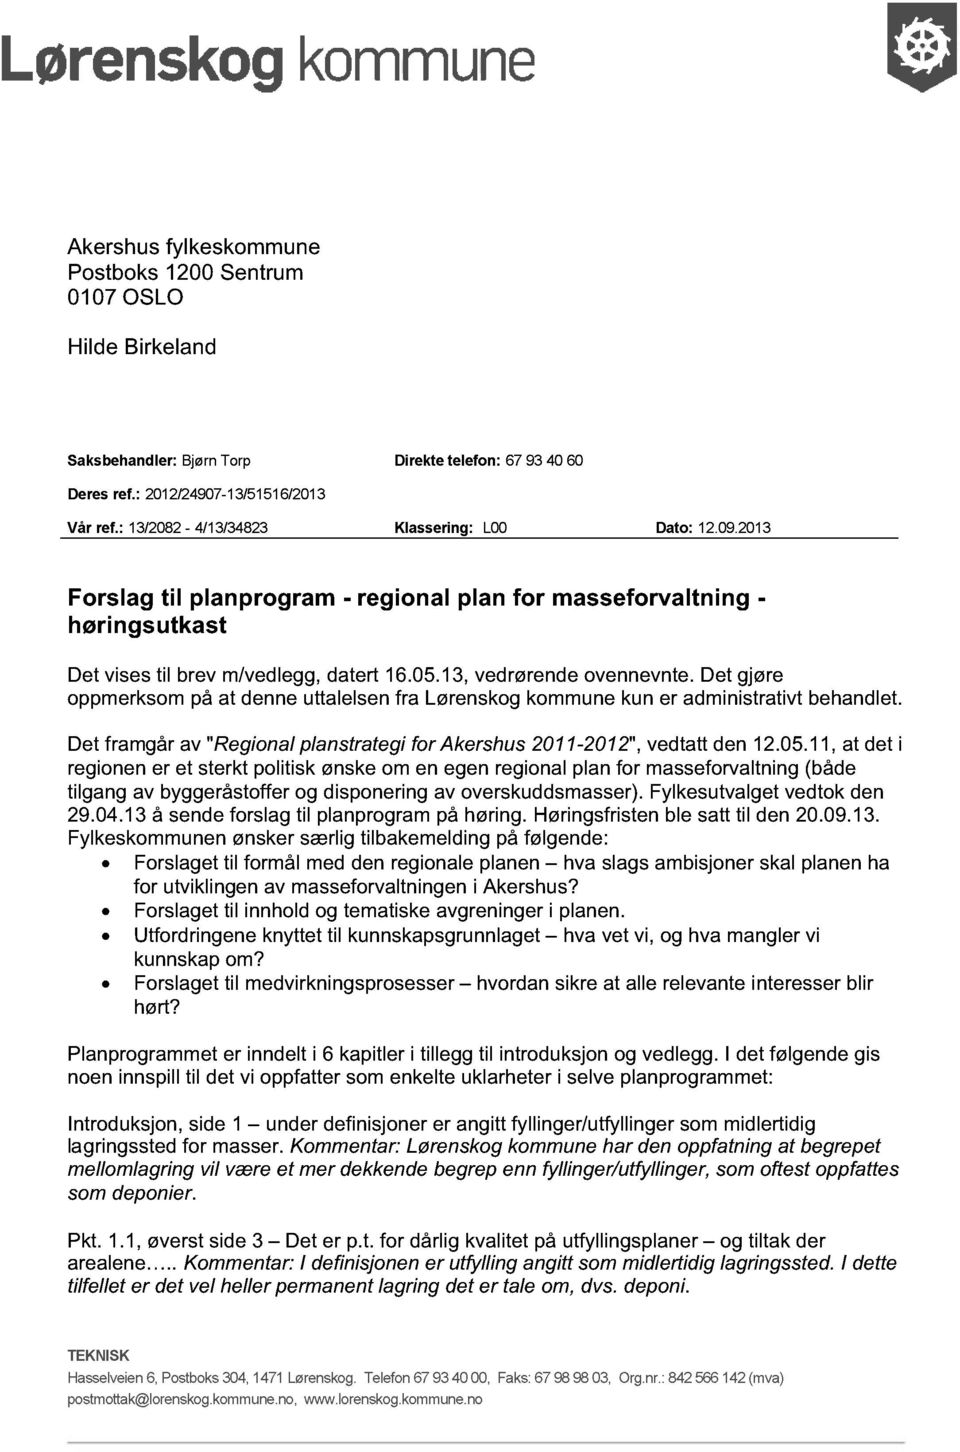 Det gjøre oppmerksom på at denne uttalelsen fra Lørenskog kommune kun er administrativt behandlet. Det framgår av "Regional planstrategi for Akershus 2011-2012", vedtatt den 12.05.